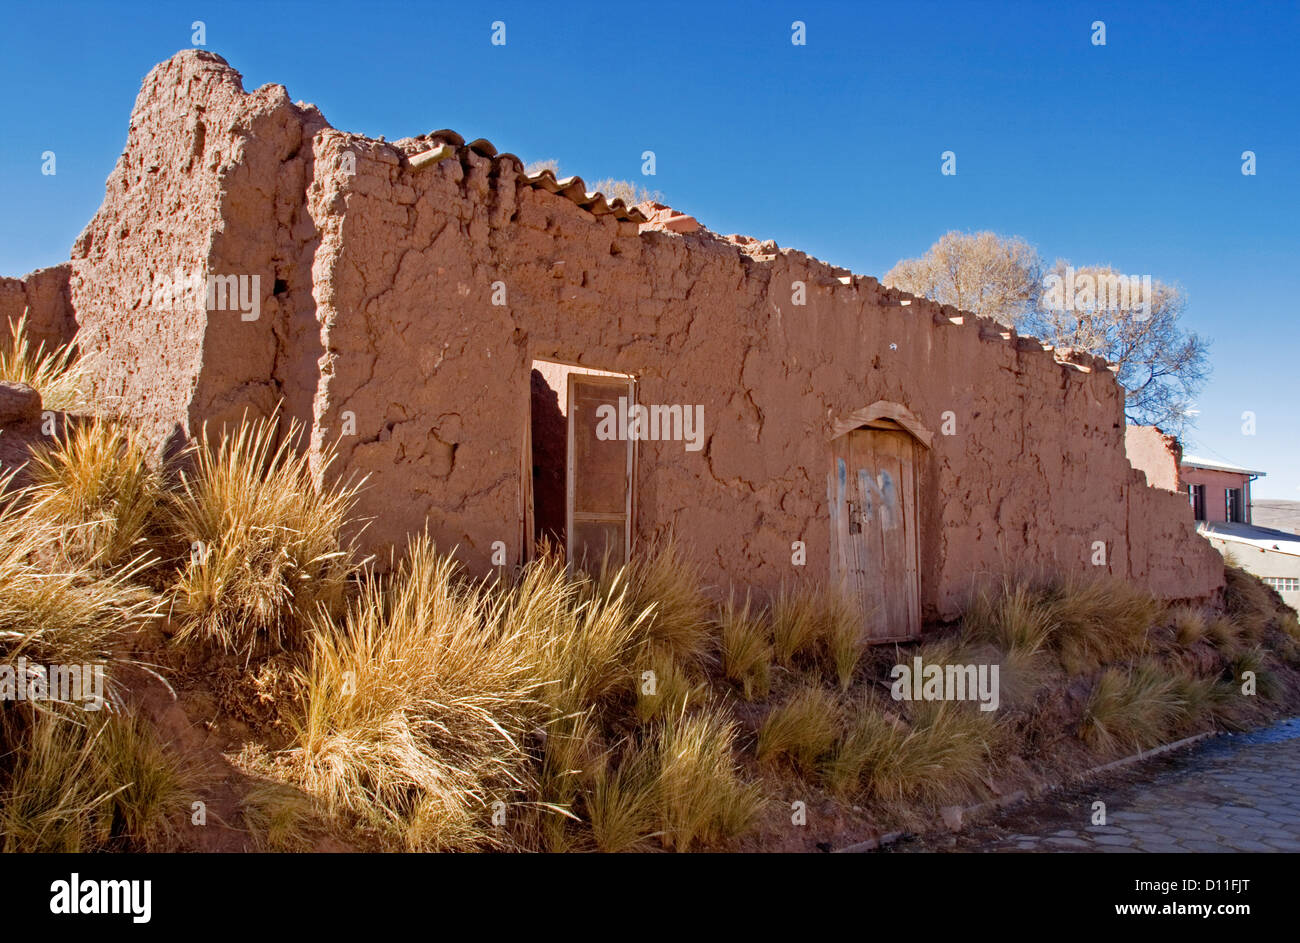 Ruines de adobe / maison de brique de boue à Tiwanaku / Tiahuanacu village de l'Altiplano de Bolivie Amérique du Sud Banque D'Images